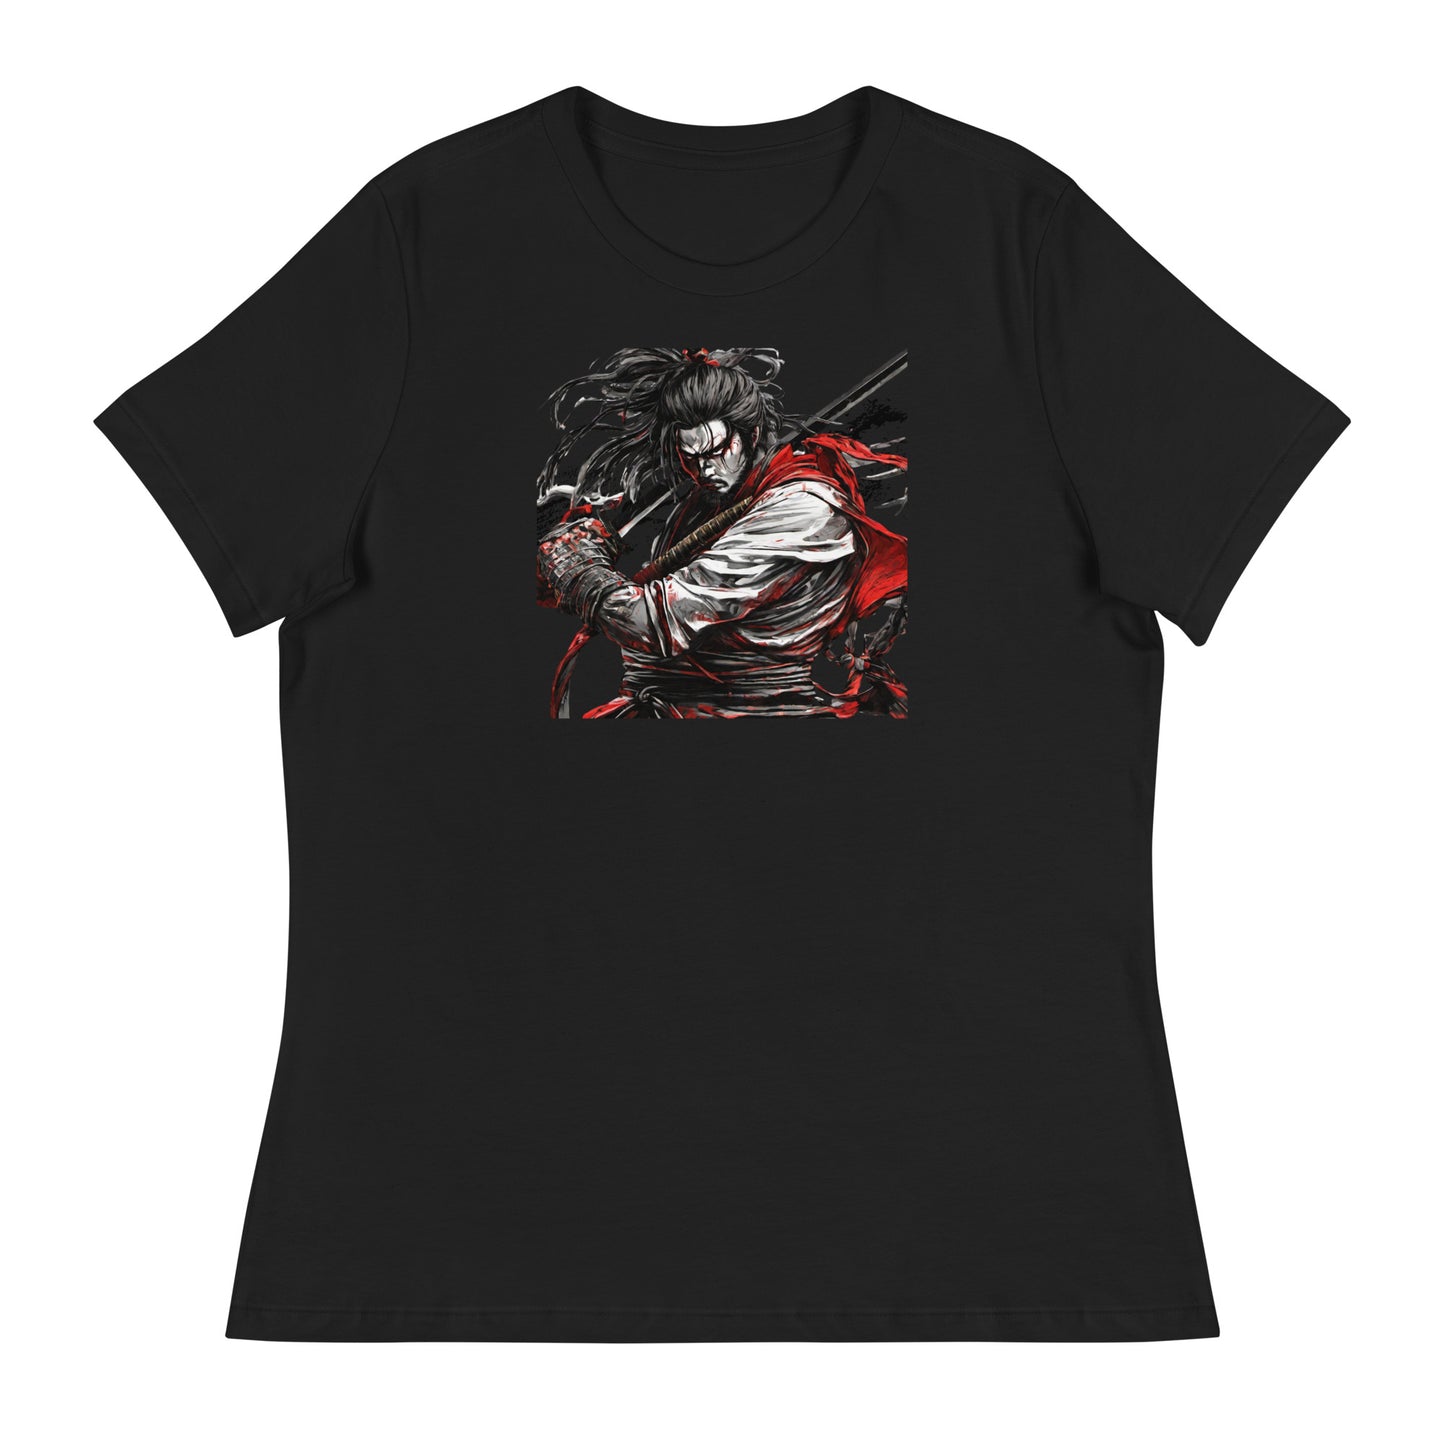 Graceful Warrior Women's T-Shirt Black